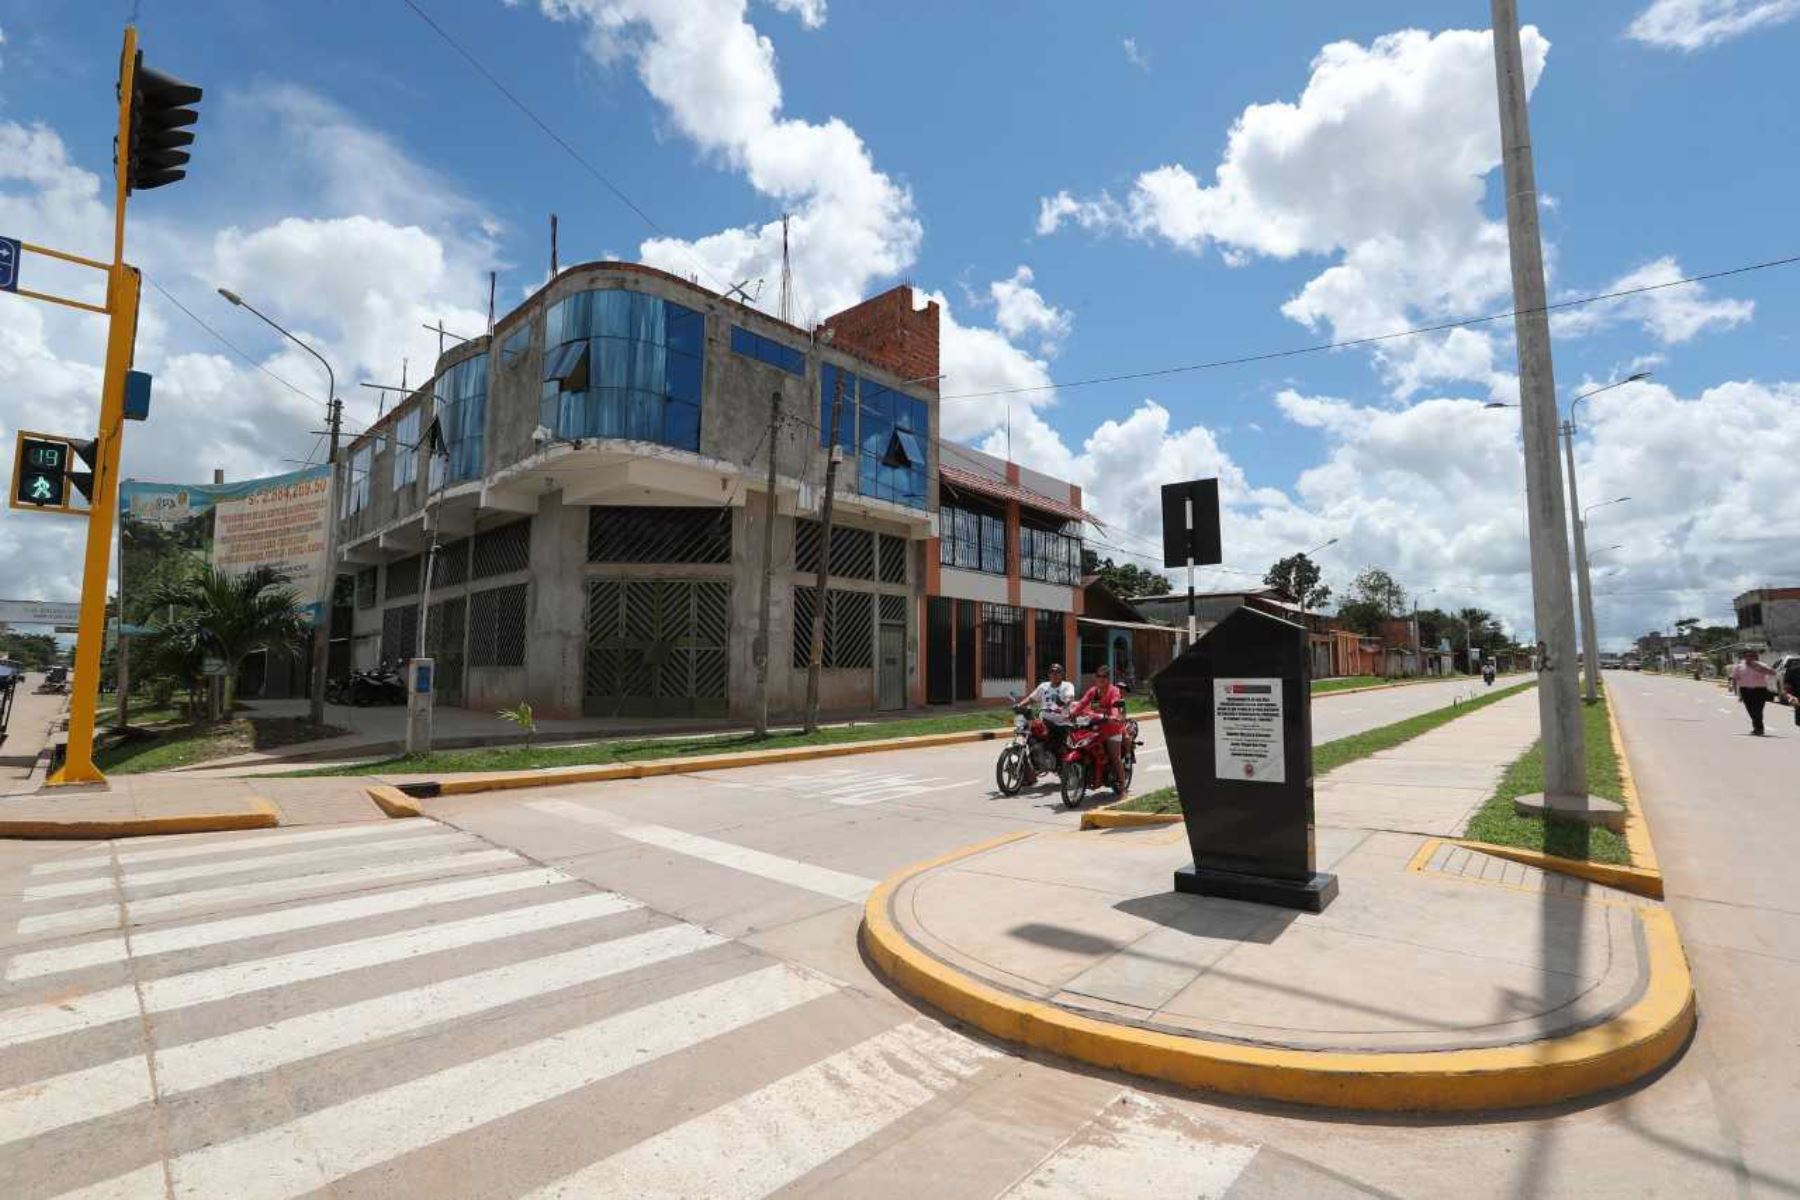 El ministro de Vivienda, Construcción y Saneamiento, Javier Piqué del Pozo, anunció que por primera vez el sector destinará 41 millones de soles para la elaboración de planes de desarrollo urbano, lo que permitirá reducir de 70% a 64% el déficit de planes urbanos en el país en el plazo de un año.